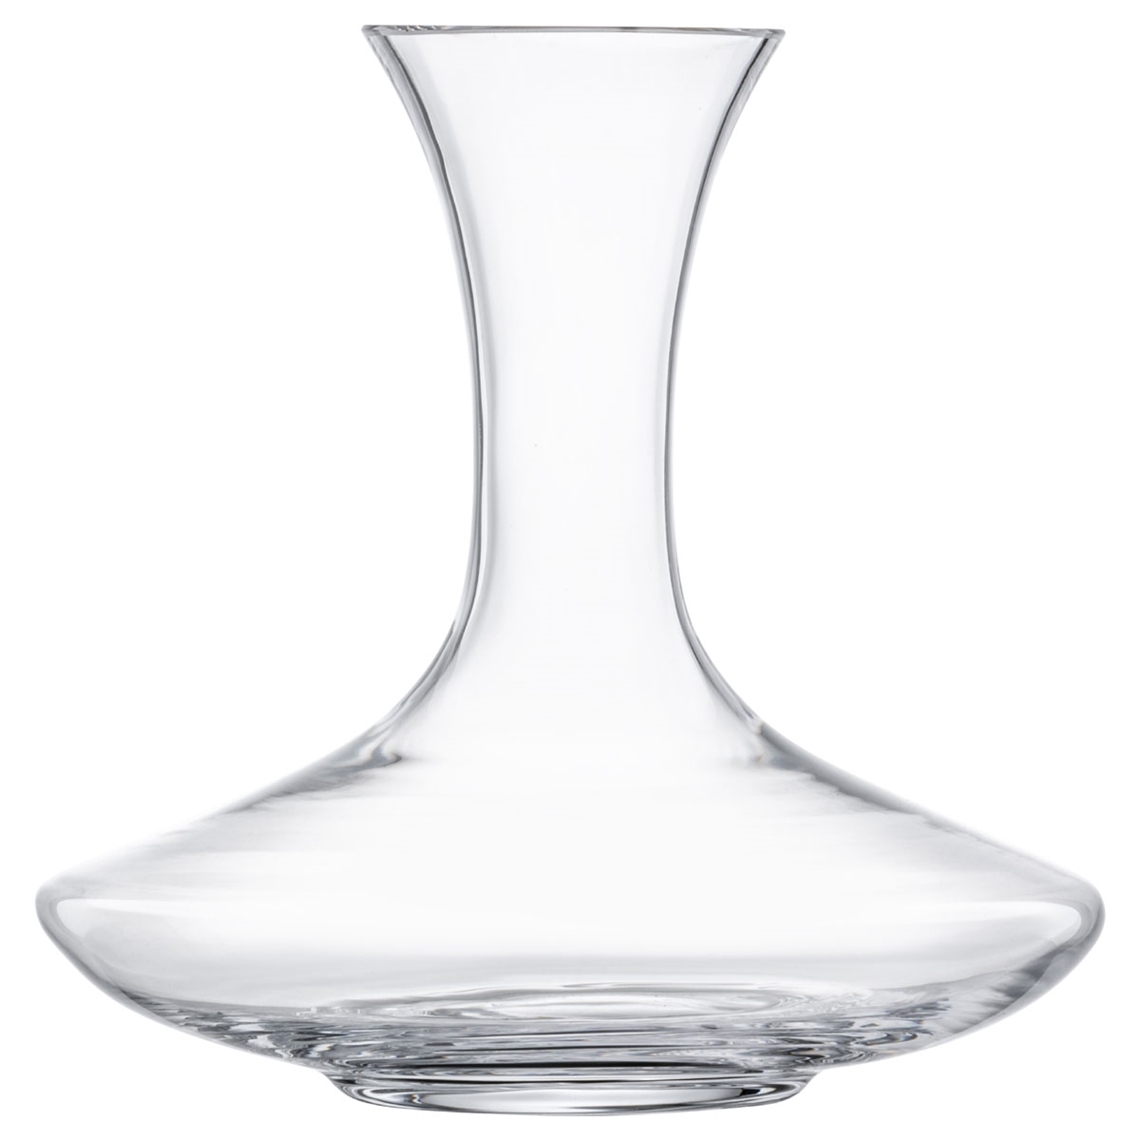 Eisch Glas Crystal Claret Wine Decanter 1.5L